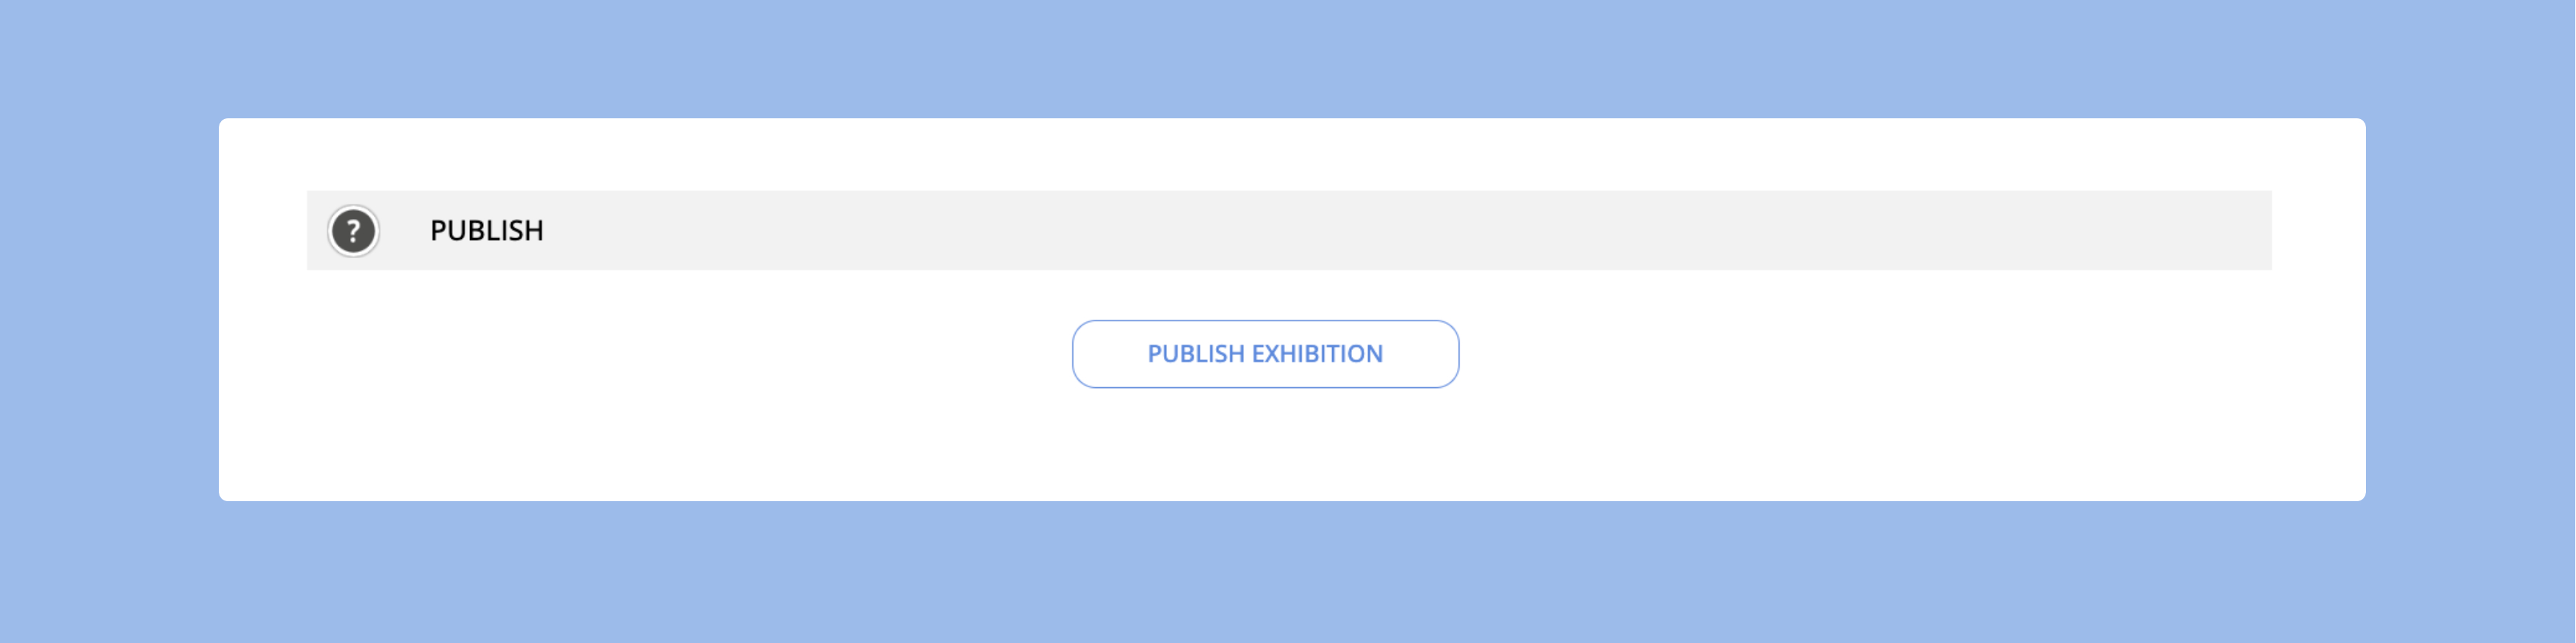 publish exhibition